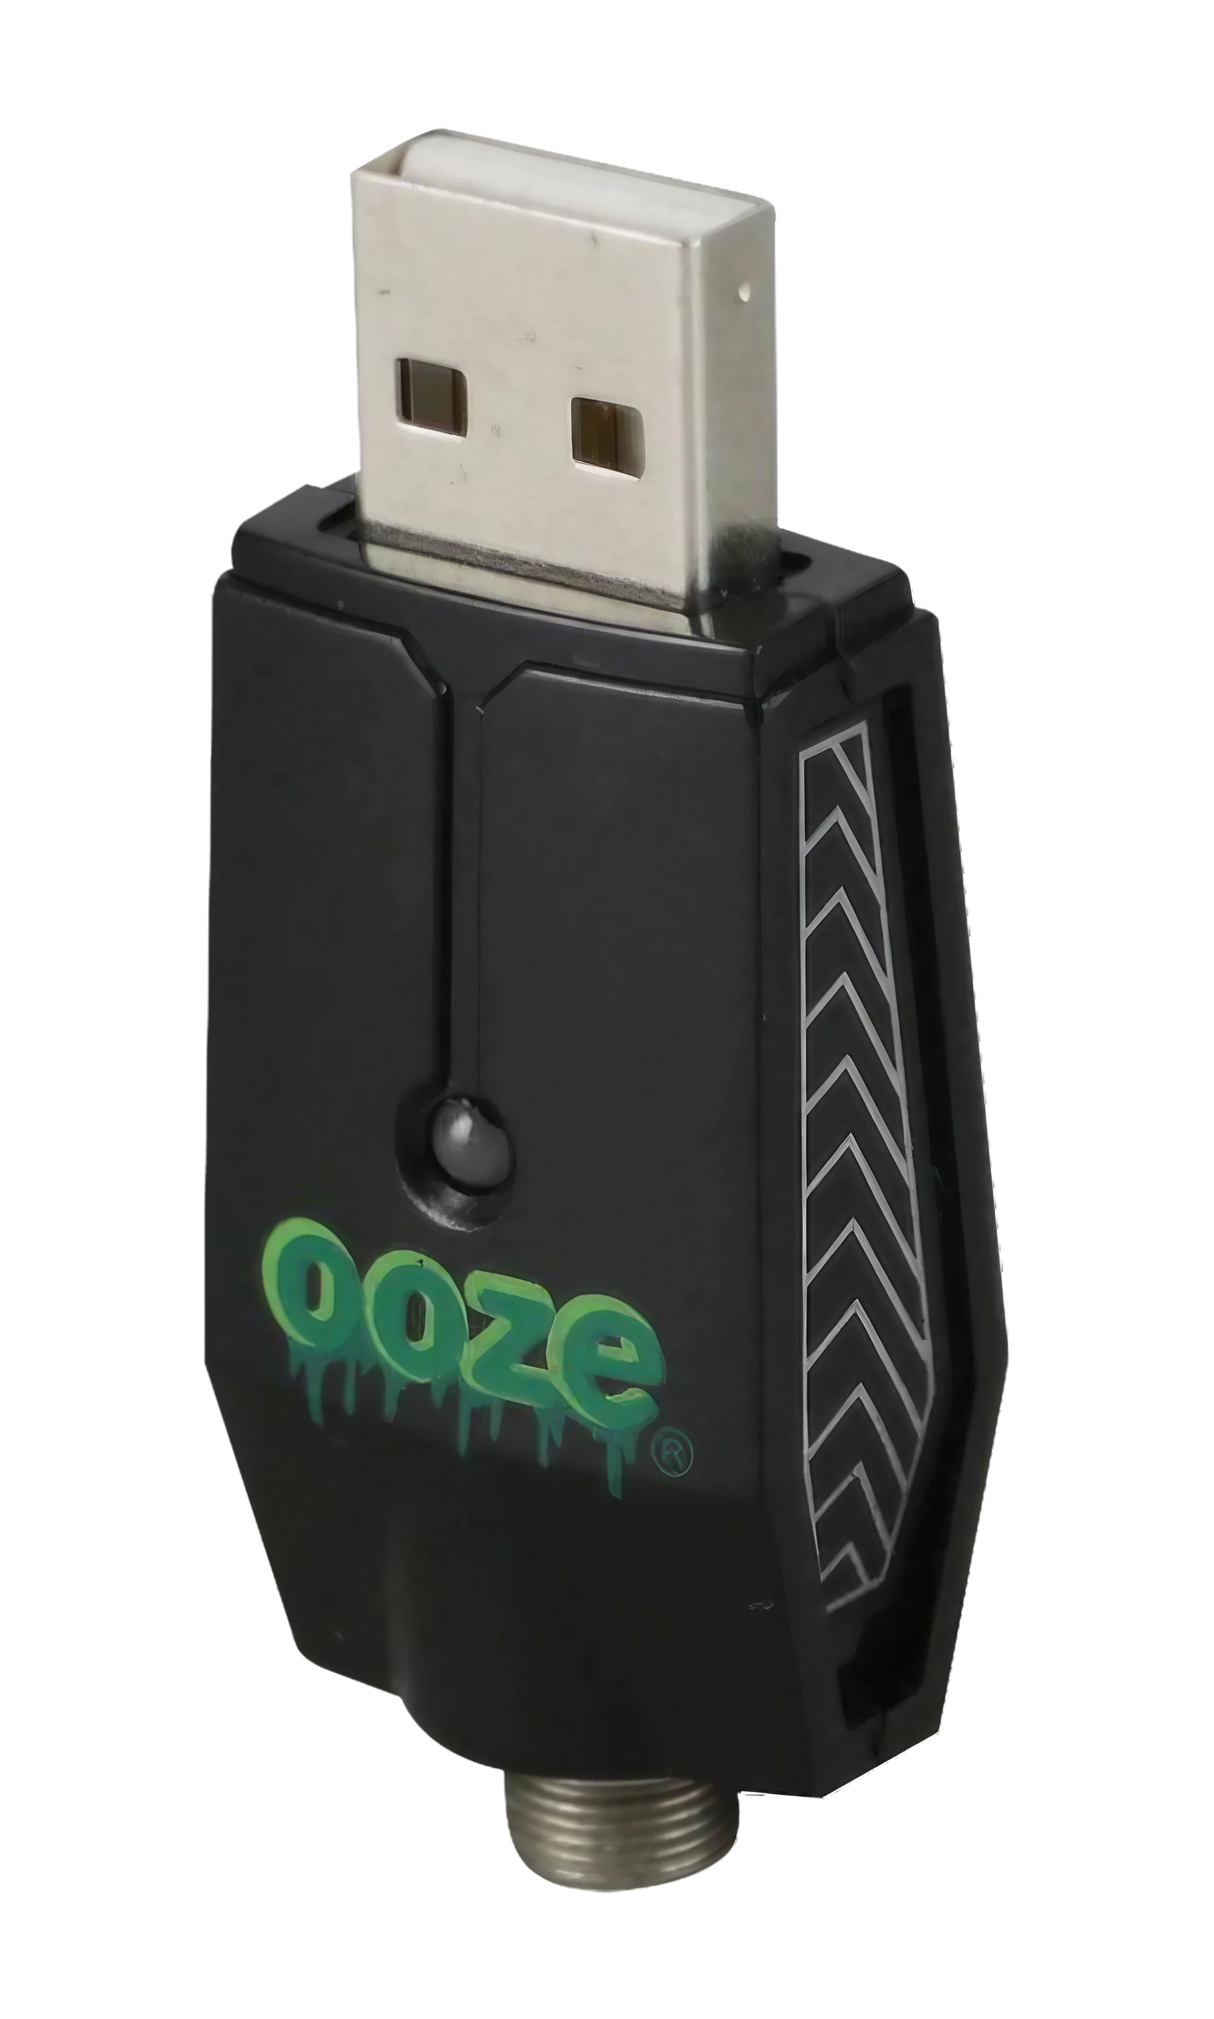 Ooze USB Intelligent Charging Units - Bulk Pack of 30